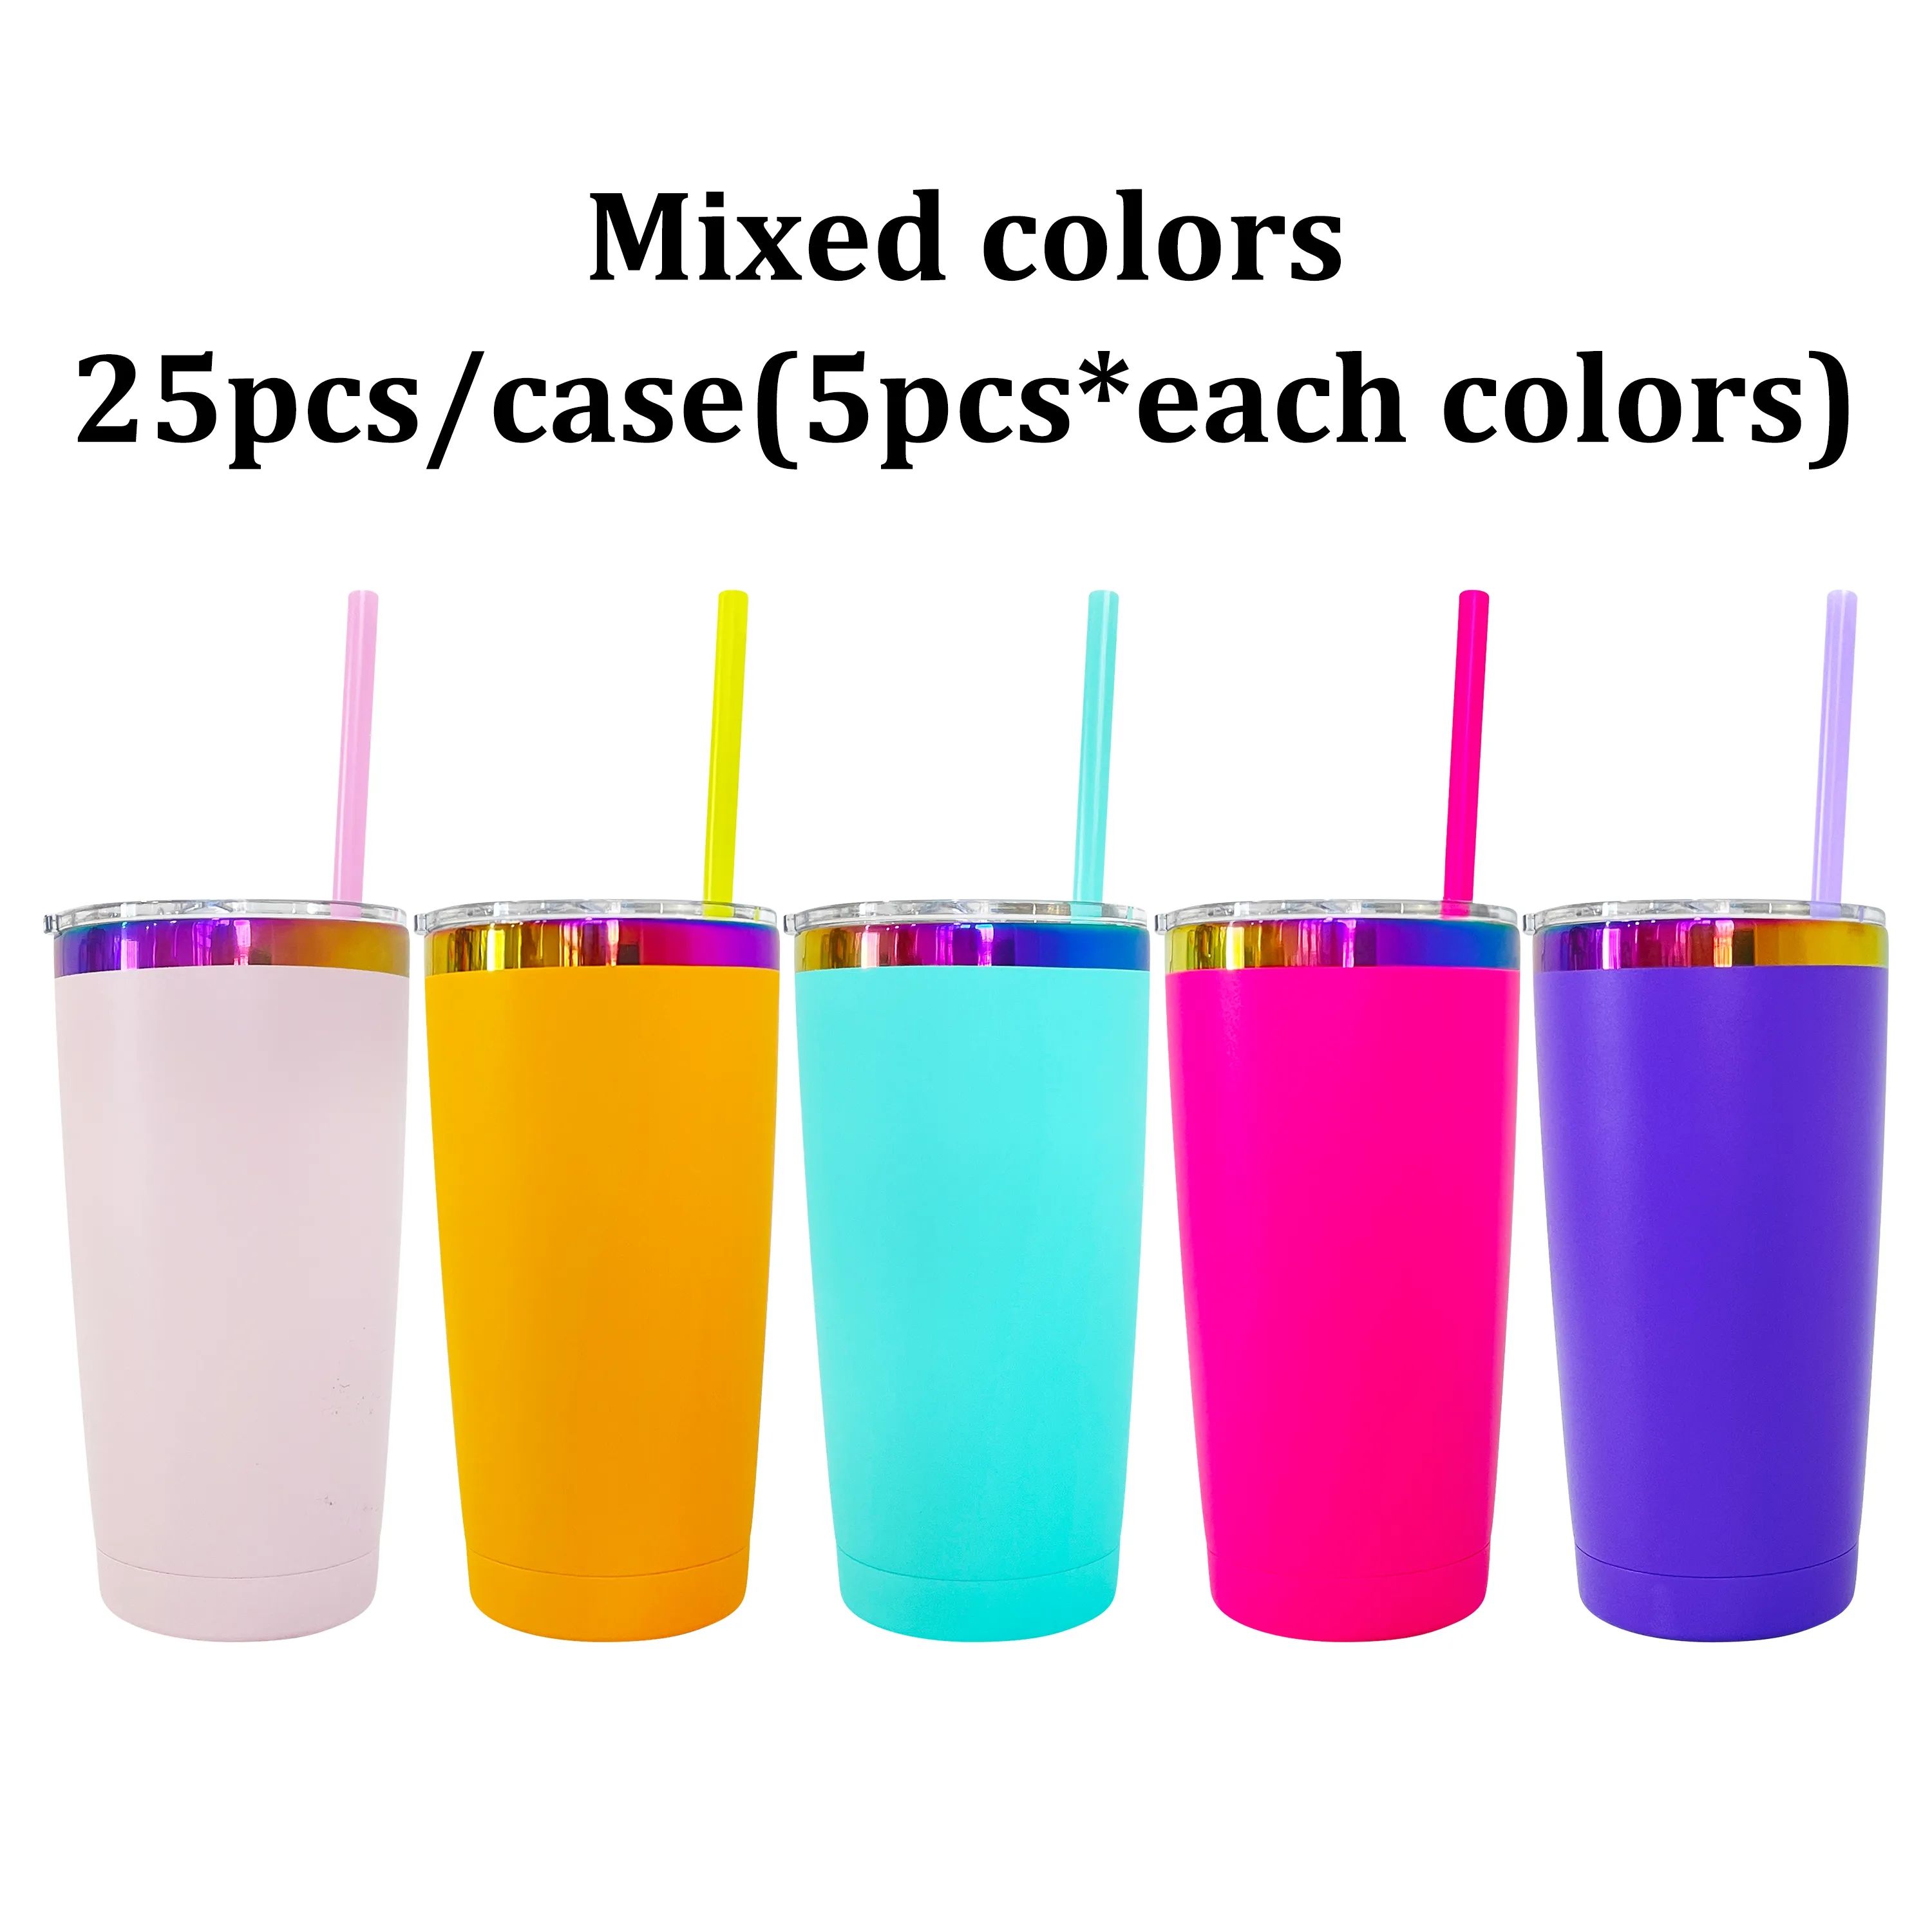 5 mixed color(25pcs/case)